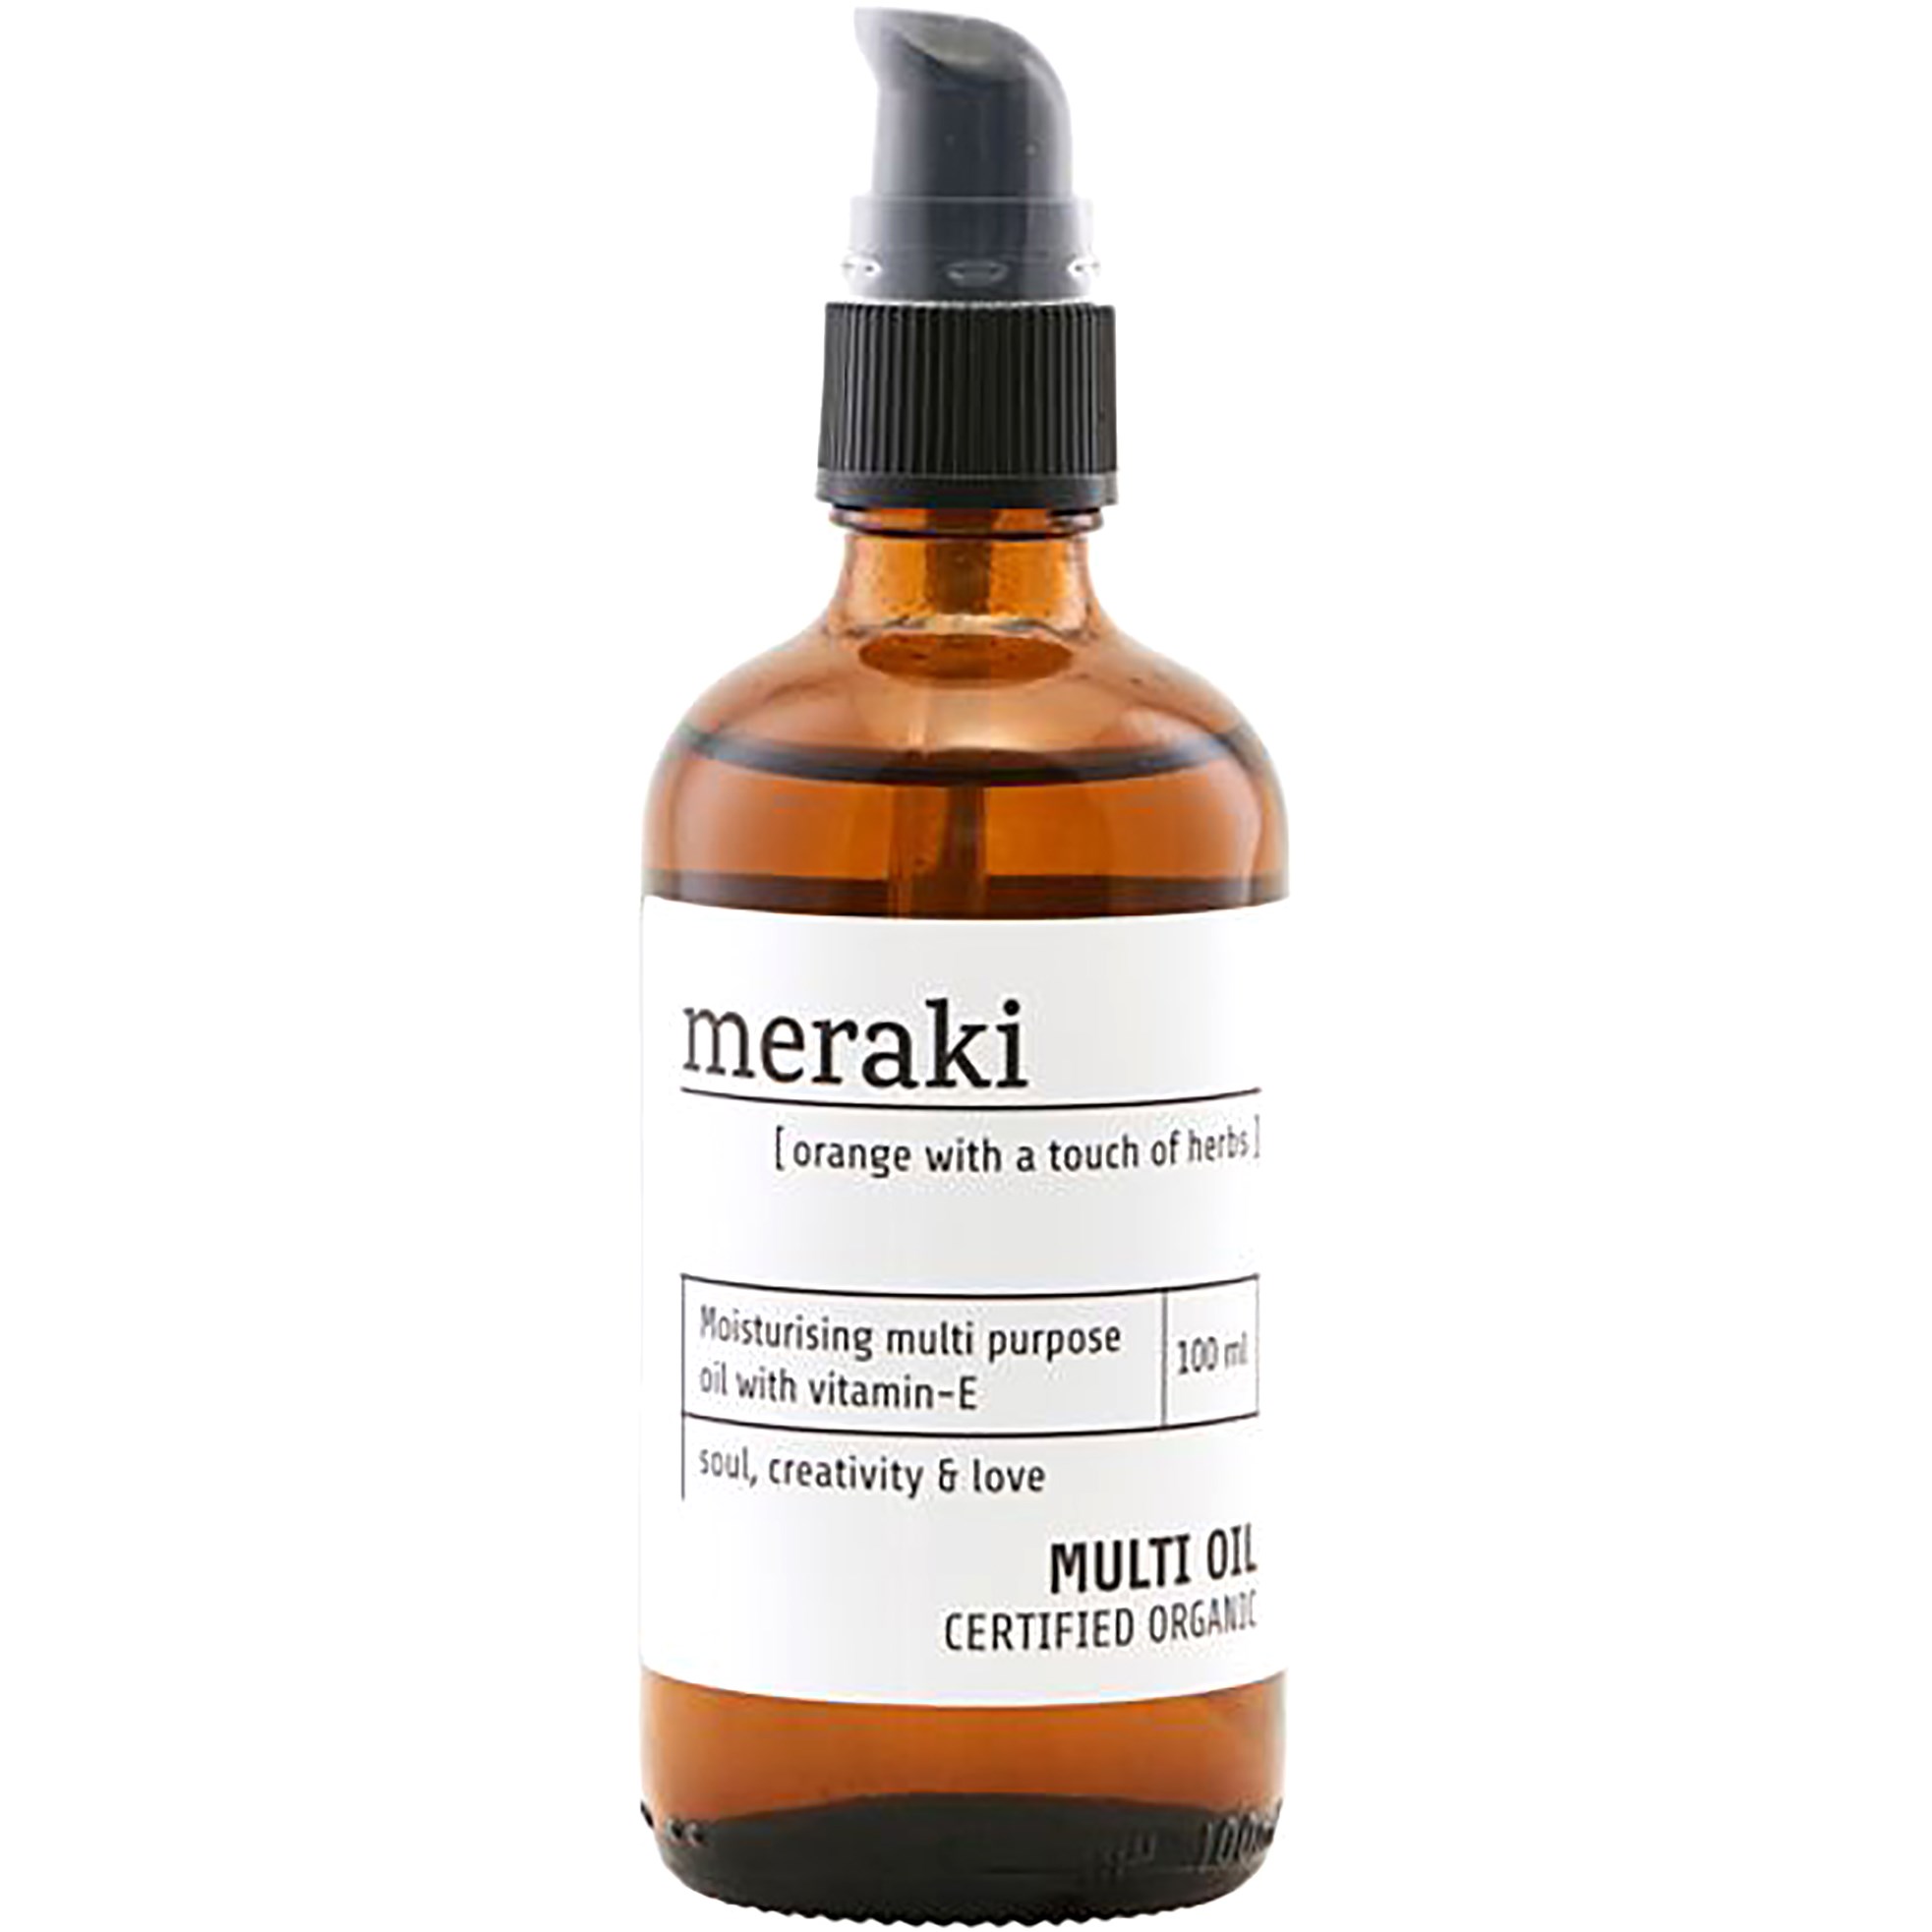 Bilde av Meraki Orange & Herbs Multi Oil 100 Ml